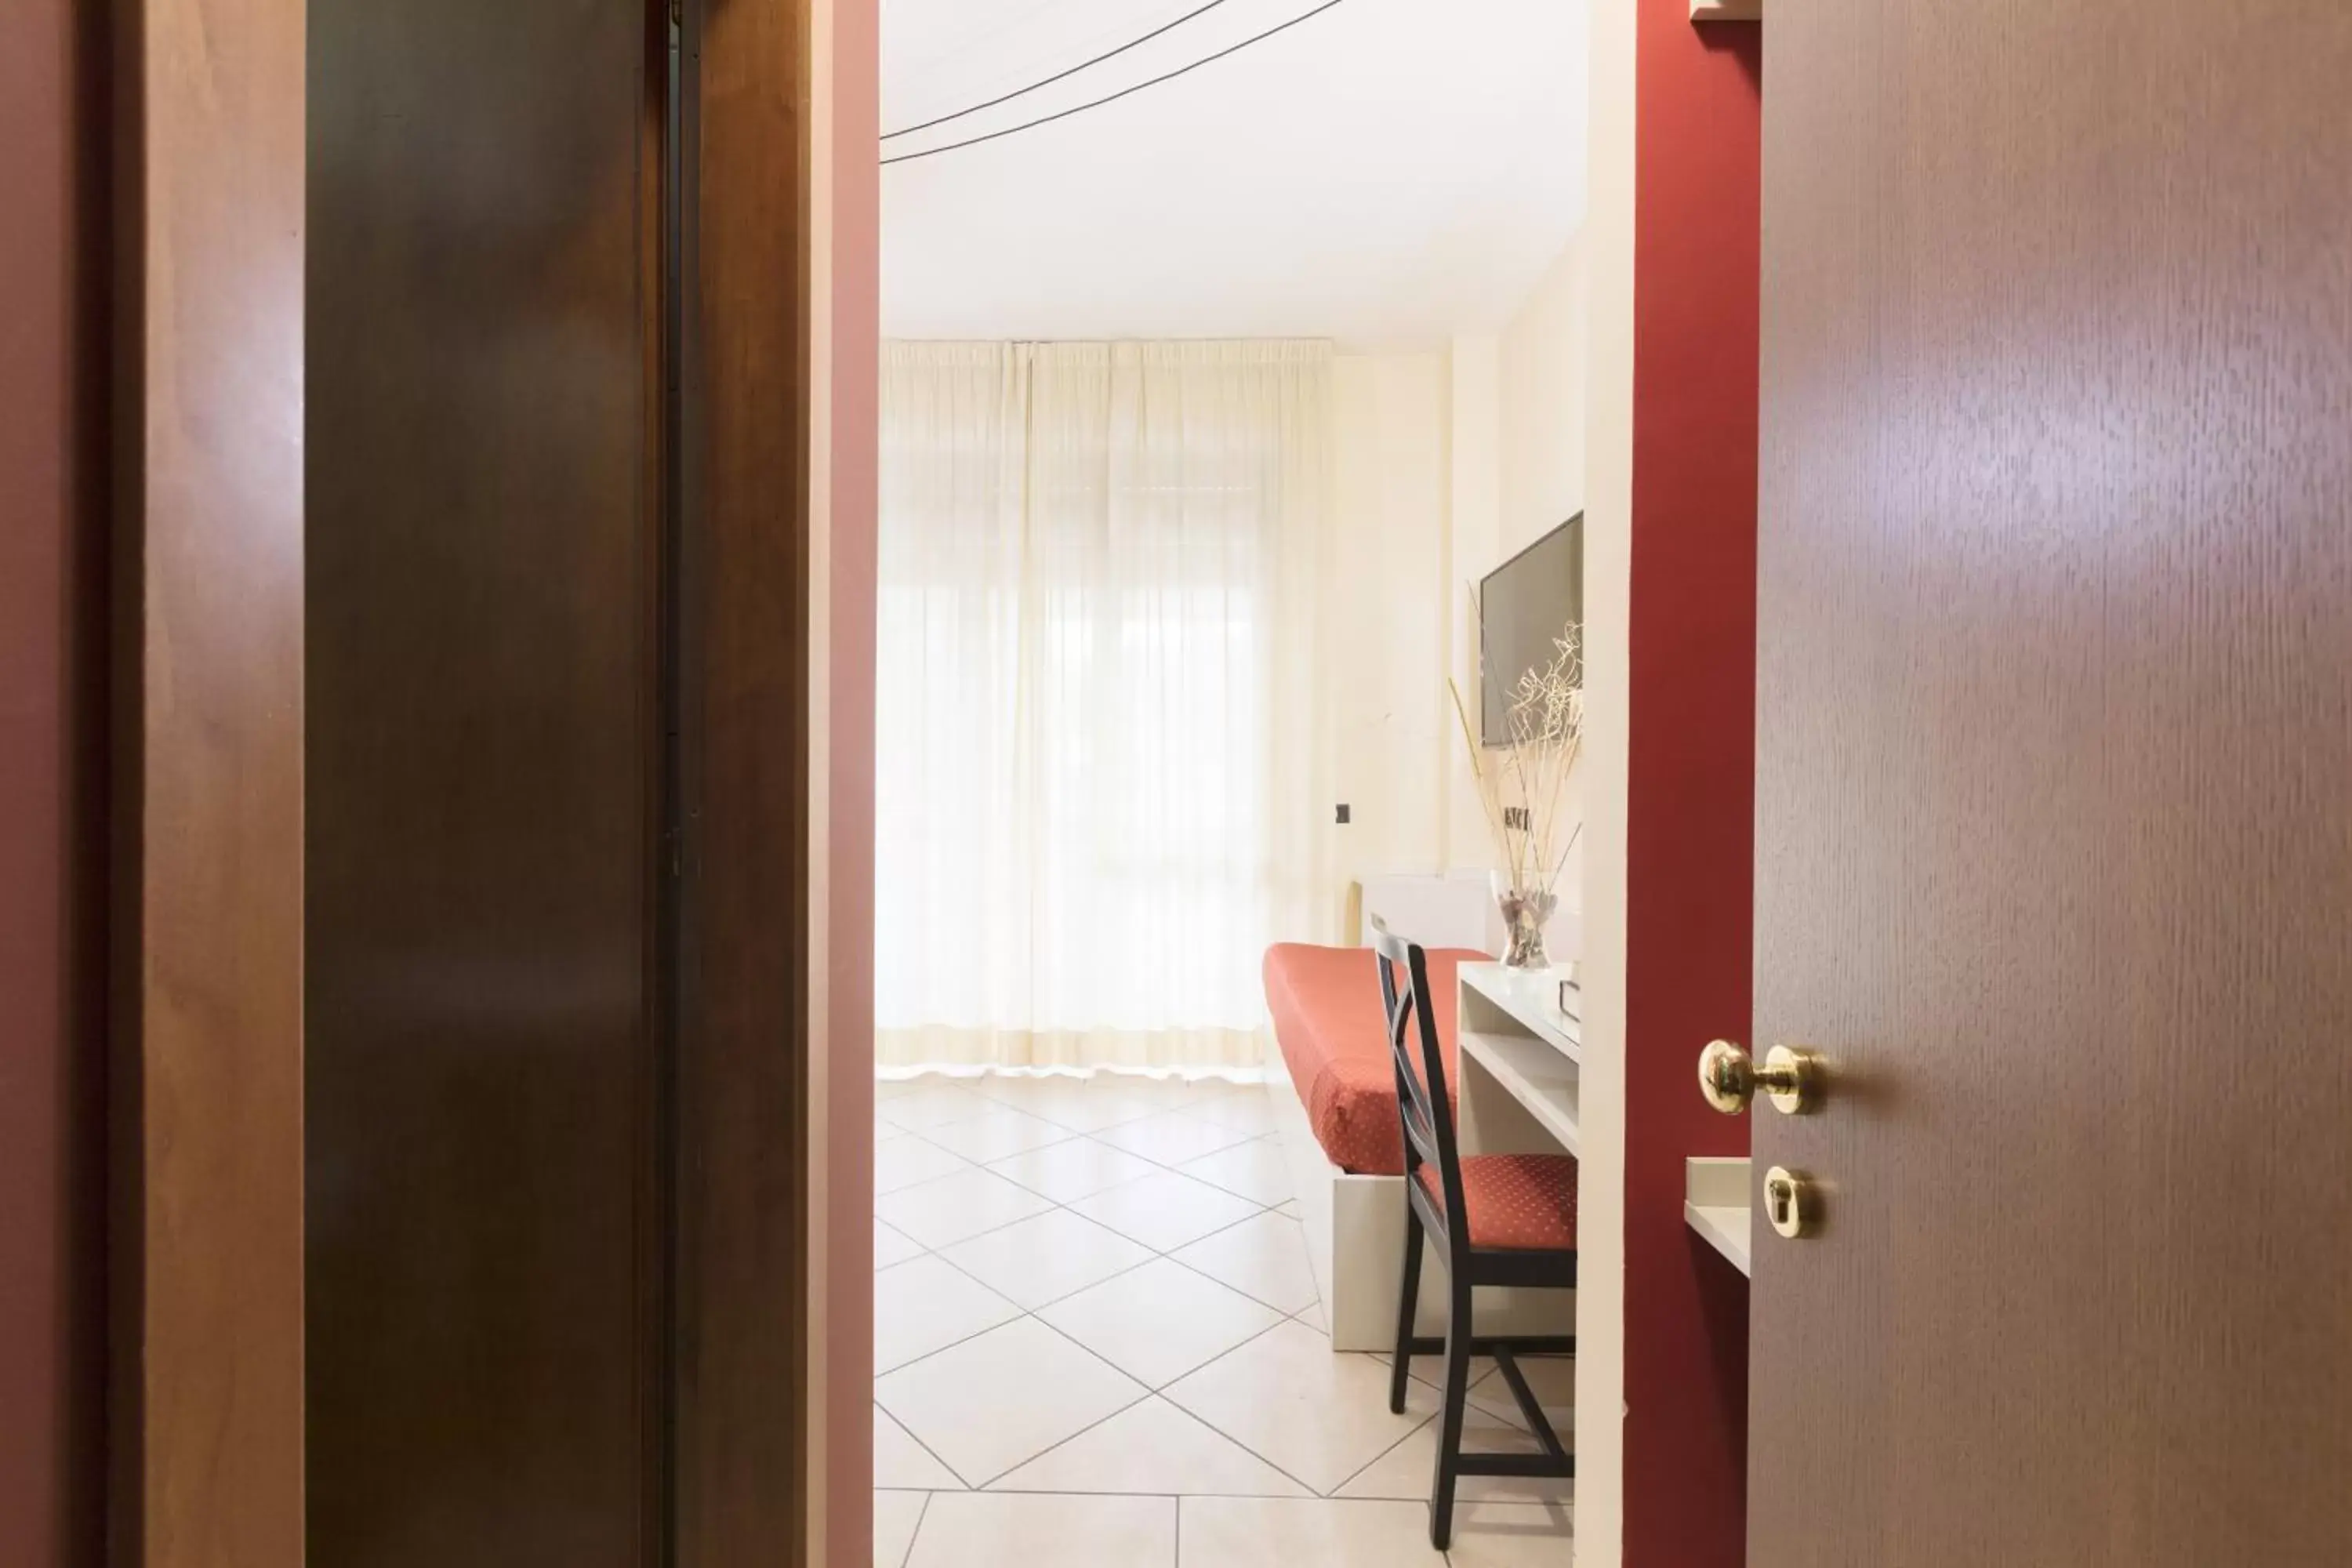 Photo of the whole room, Bathroom in Hotel La Baia